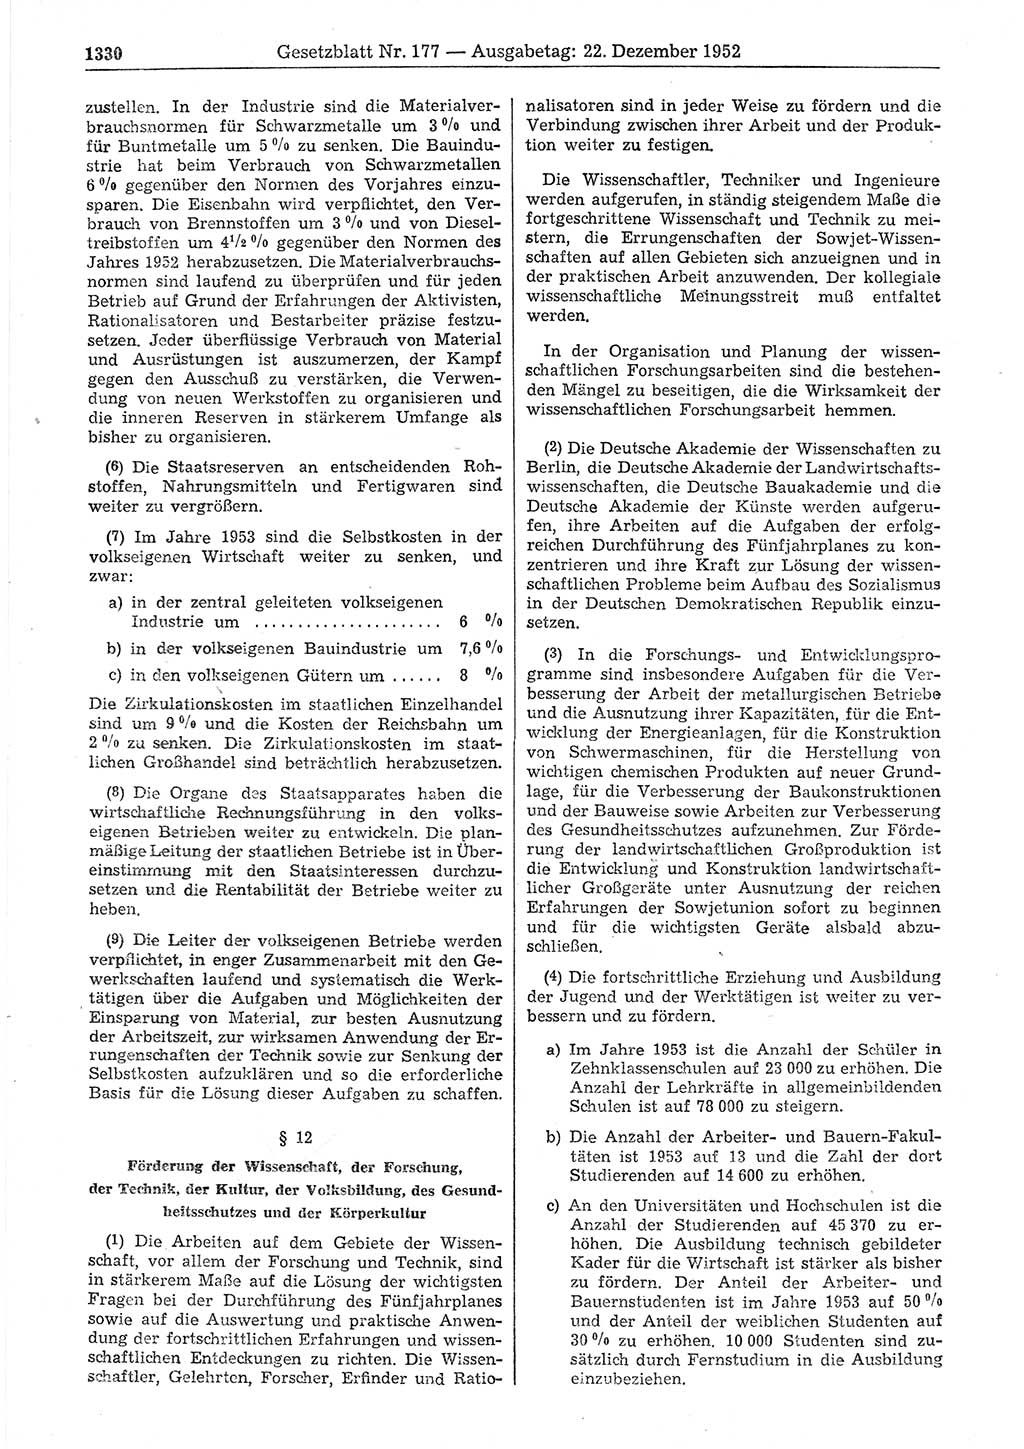 Gesetzblatt (GBl.) der Deutschen Demokratischen Republik (DDR) 1952, Seite 1330 (GBl. DDR 1952, S. 1330)